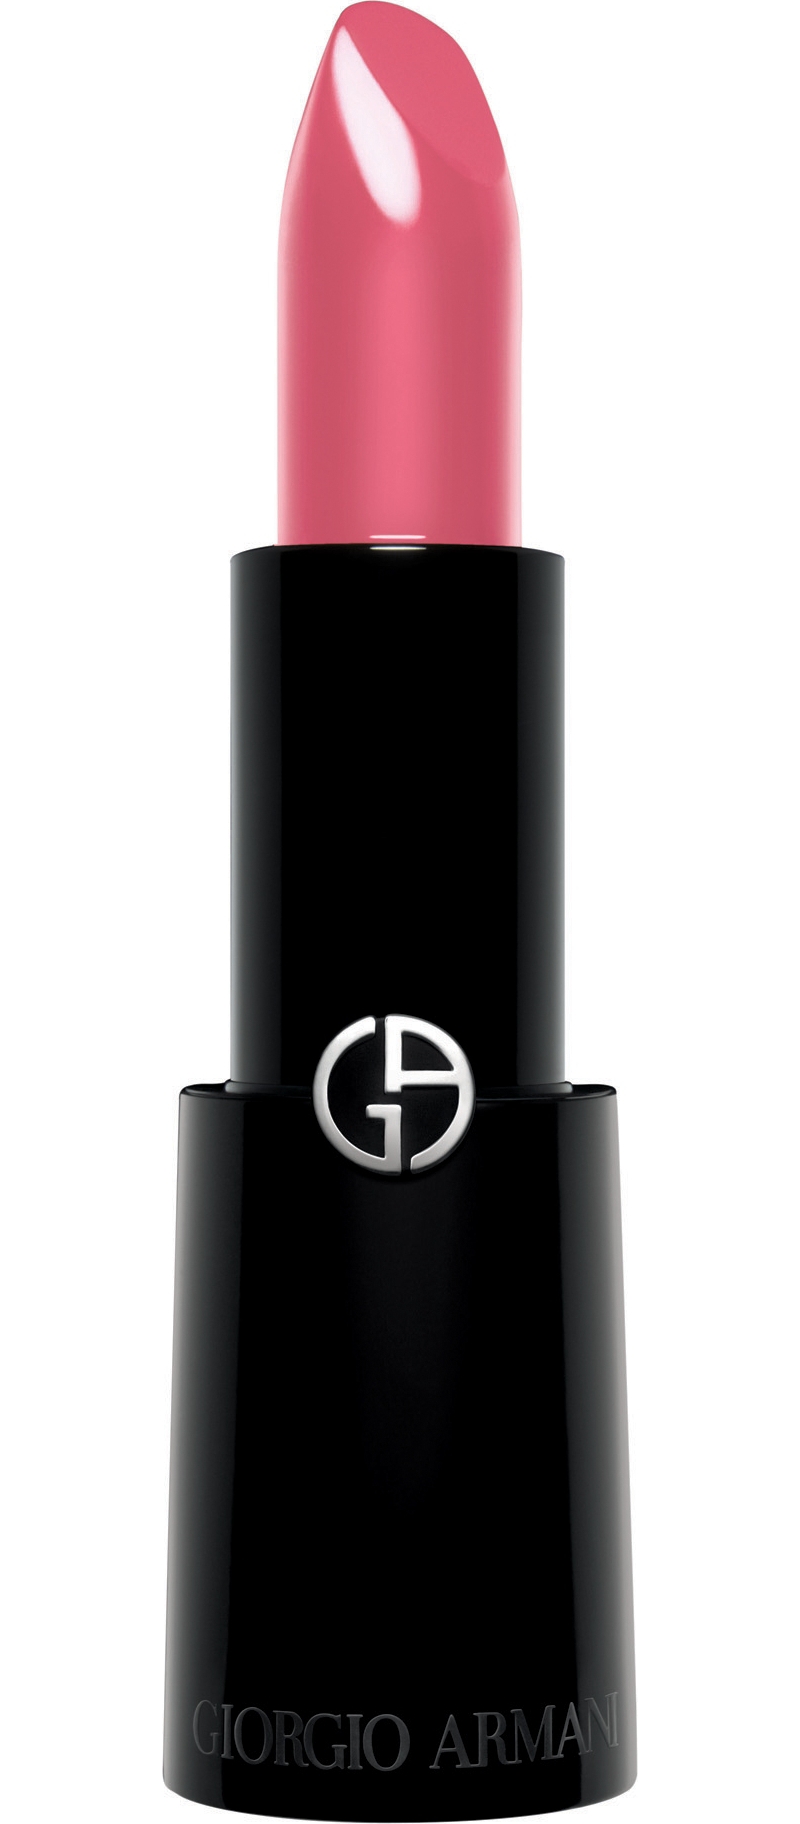 GIORGIO ARMANI   Rouge d'Armani lipstick